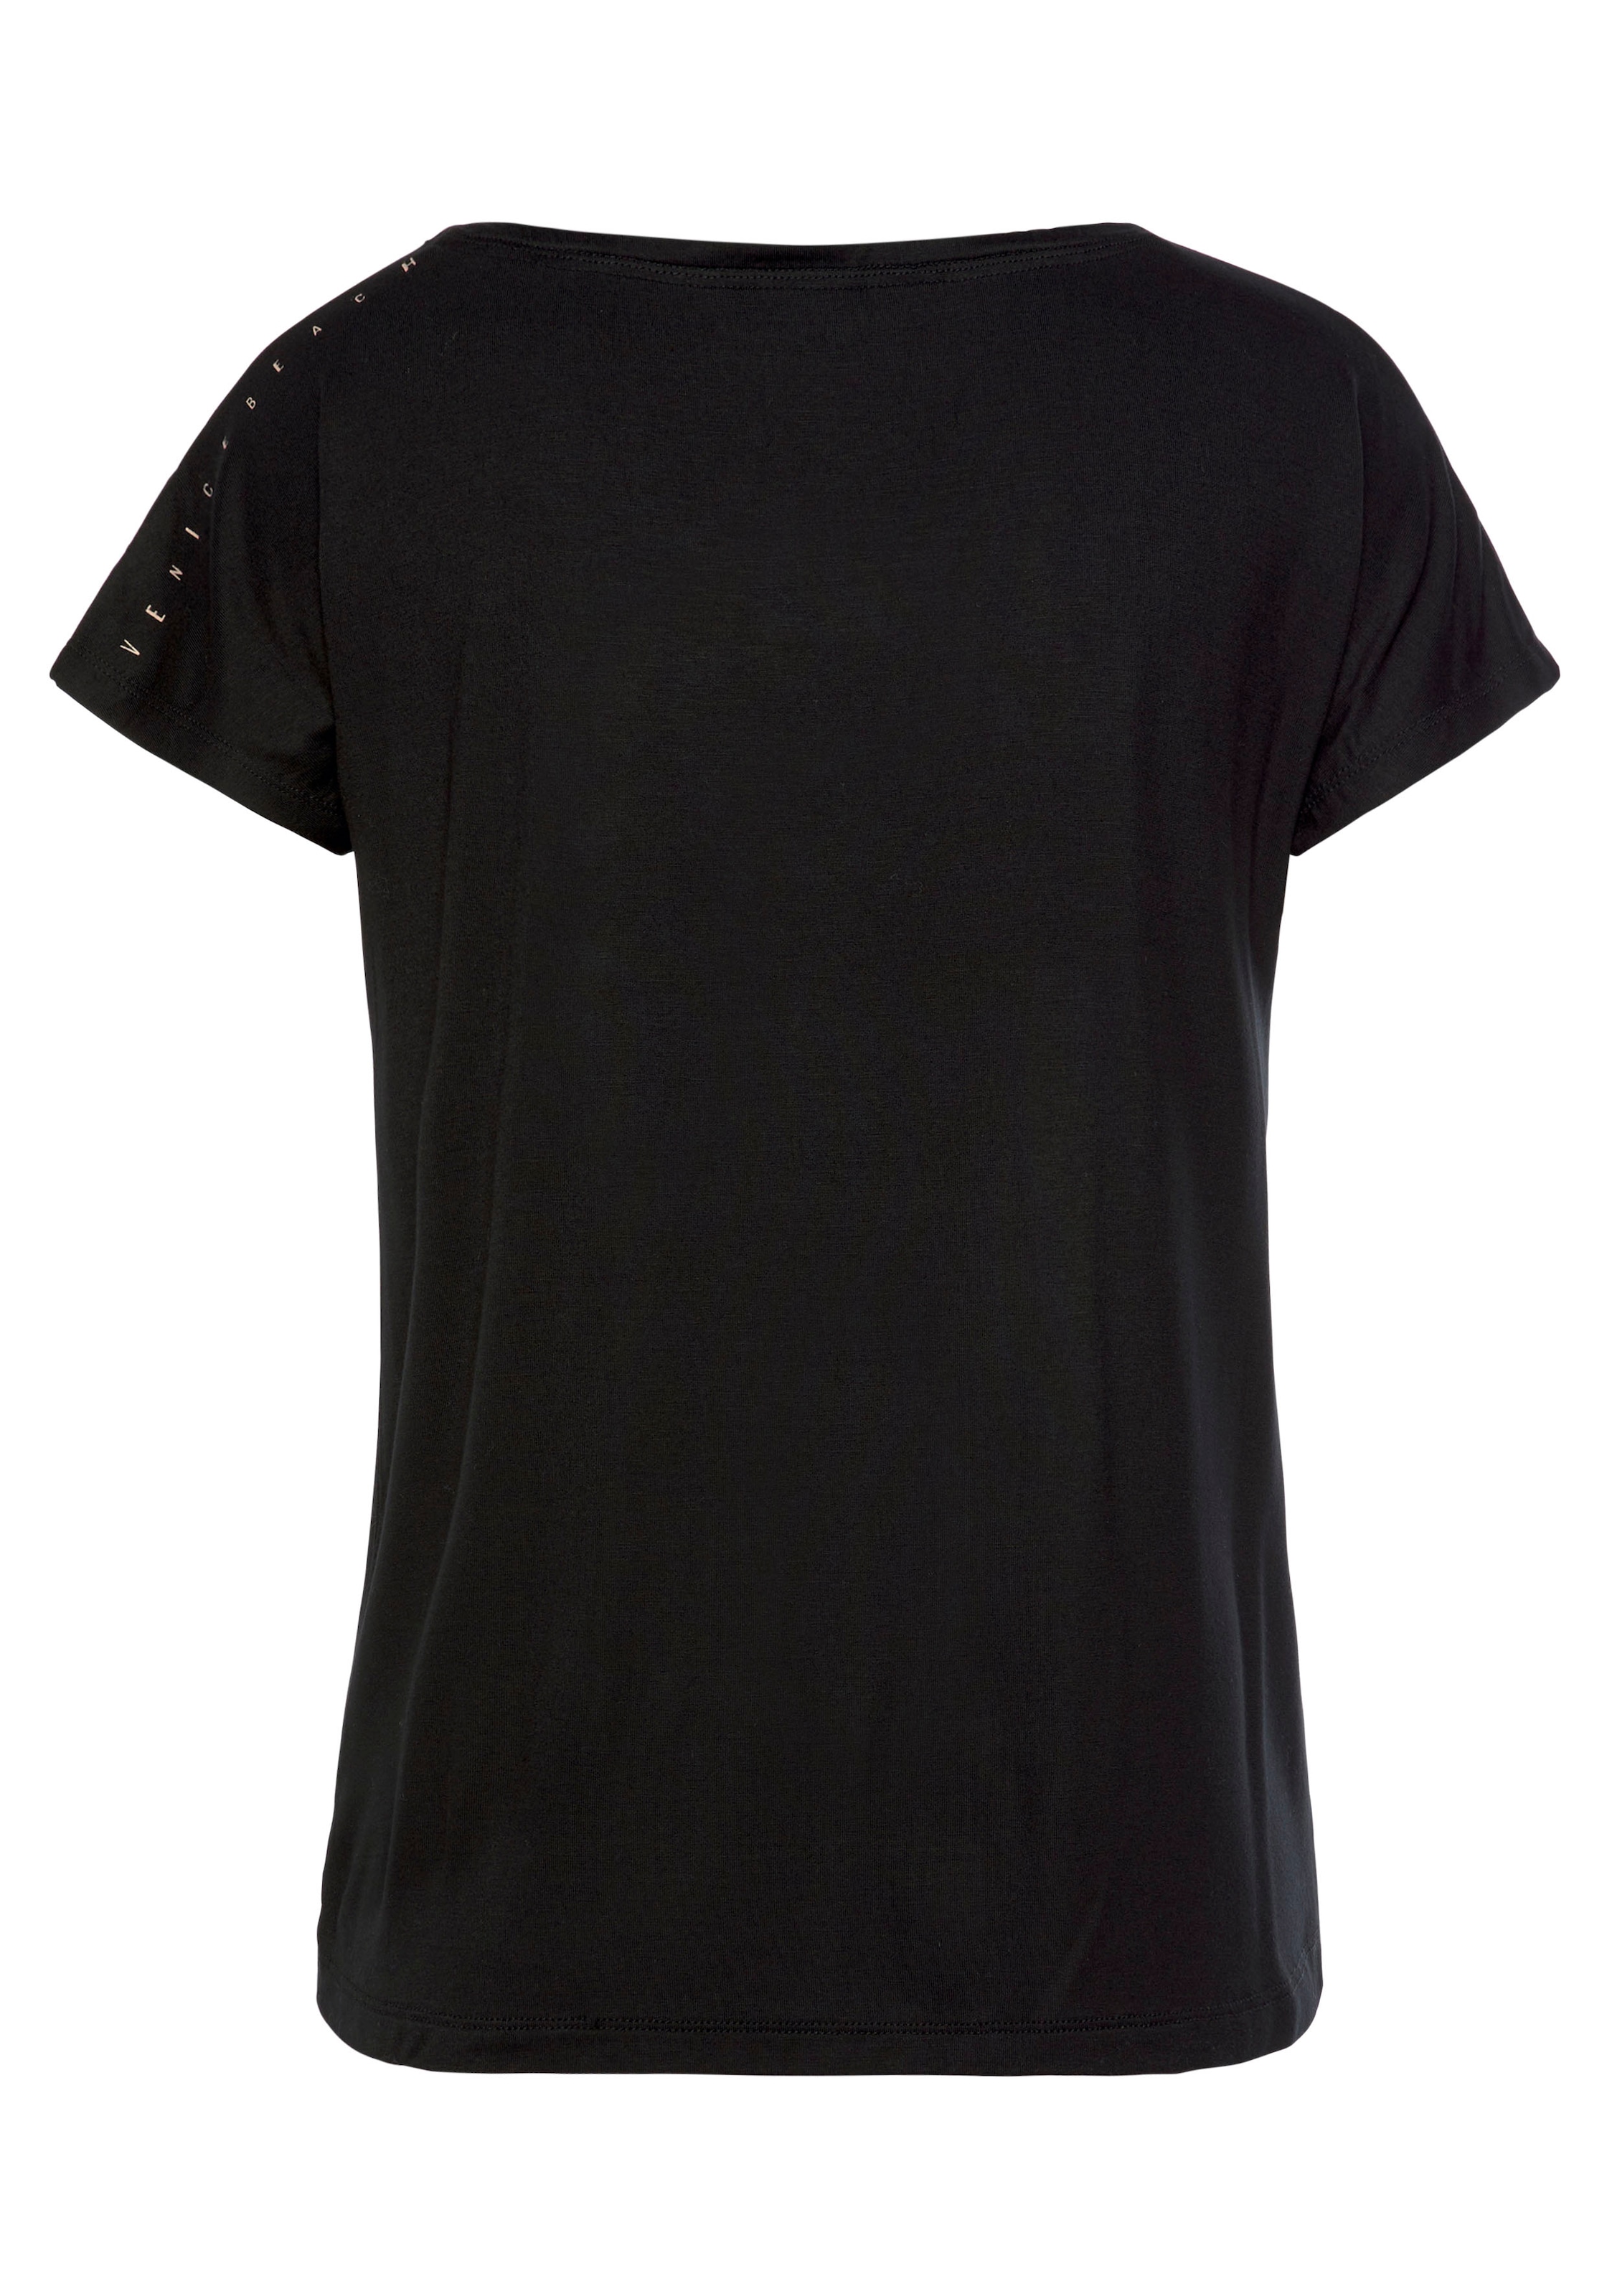 Venice Beach Kurzarmshirt, mit bedrucktem Einsatz am Saum, T-Shirt, lockere Passform